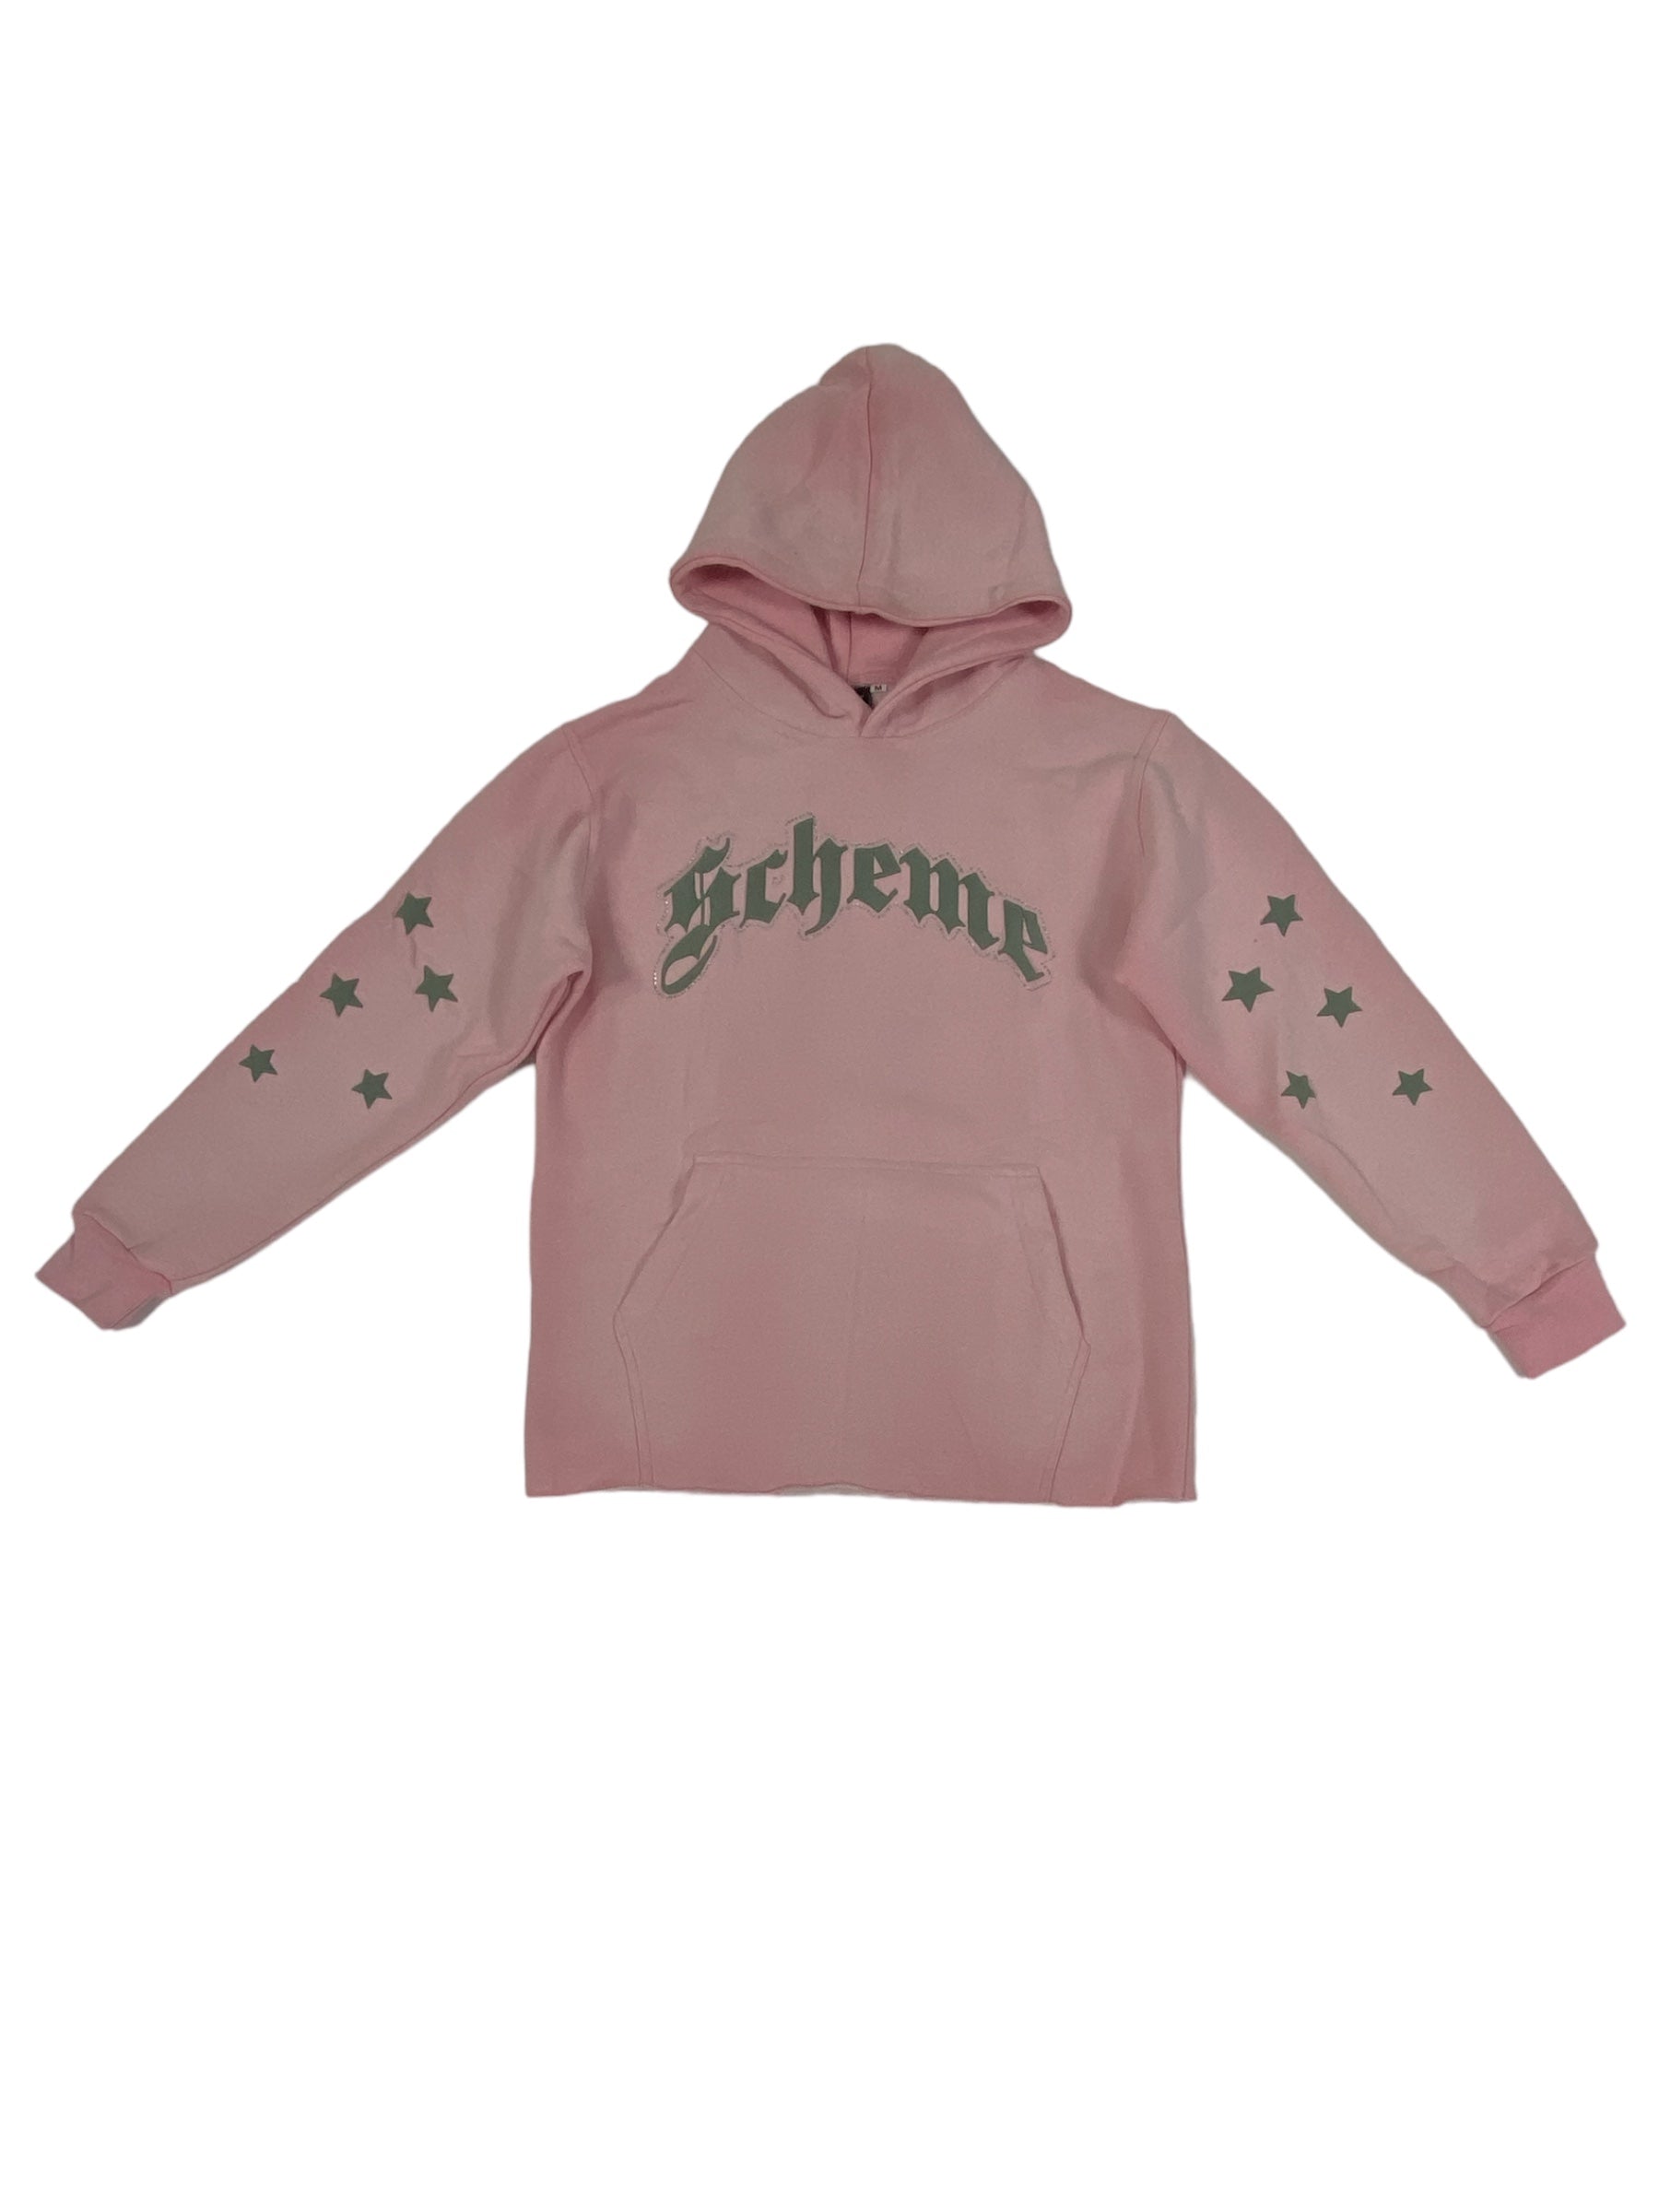 "Scheme" Rhinestone Star Puff - Washed Pink Hoodie - Scheme Wear